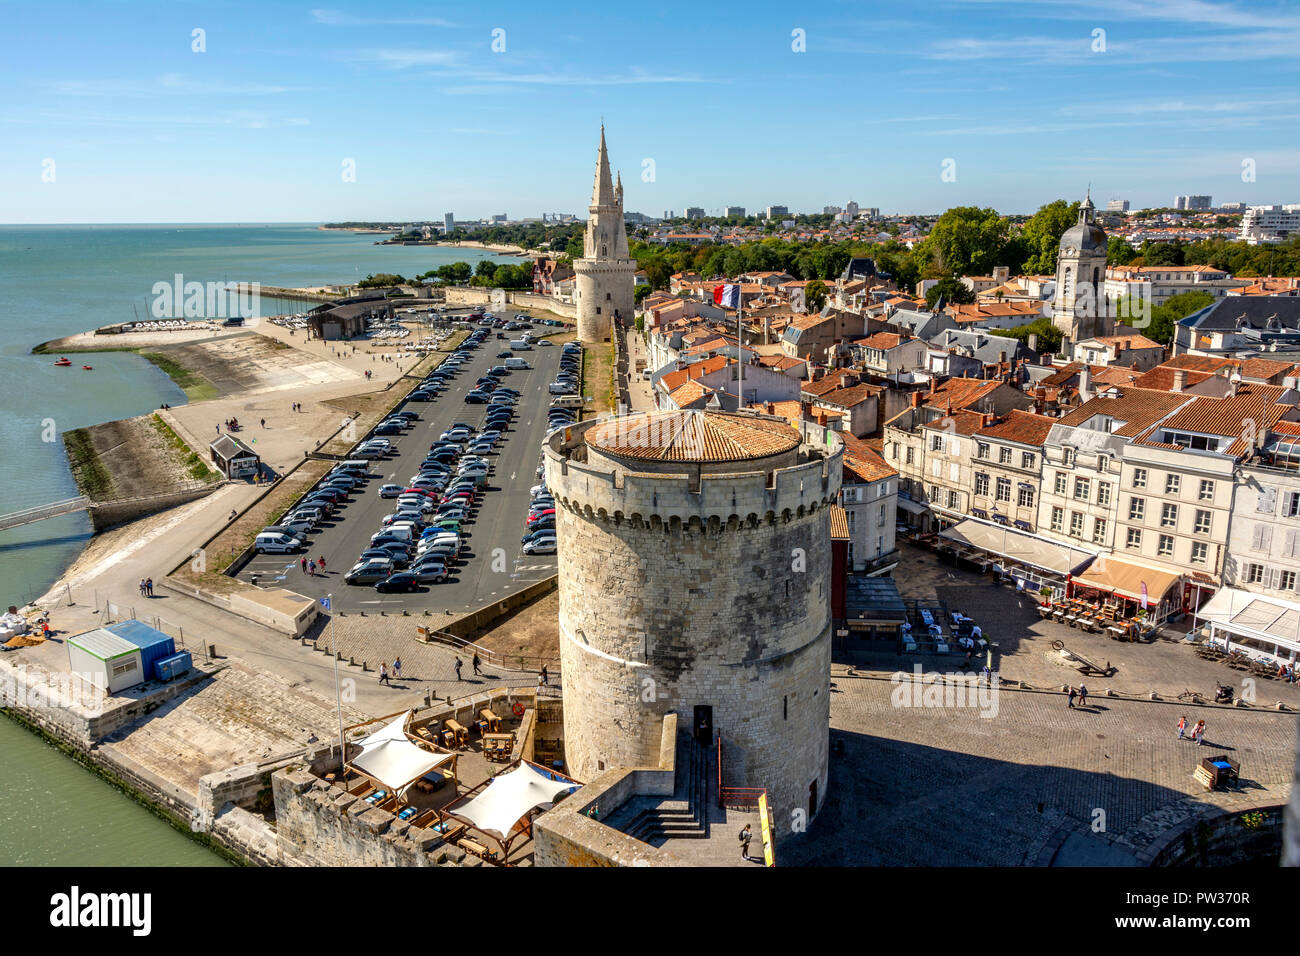 The Lantern Tower (Tour de la Lanterne) and The Chain Tower (Tour de la Chaine) at the entrance to the ancient port of La Rochelle, Charente Maritime, Stock Photo